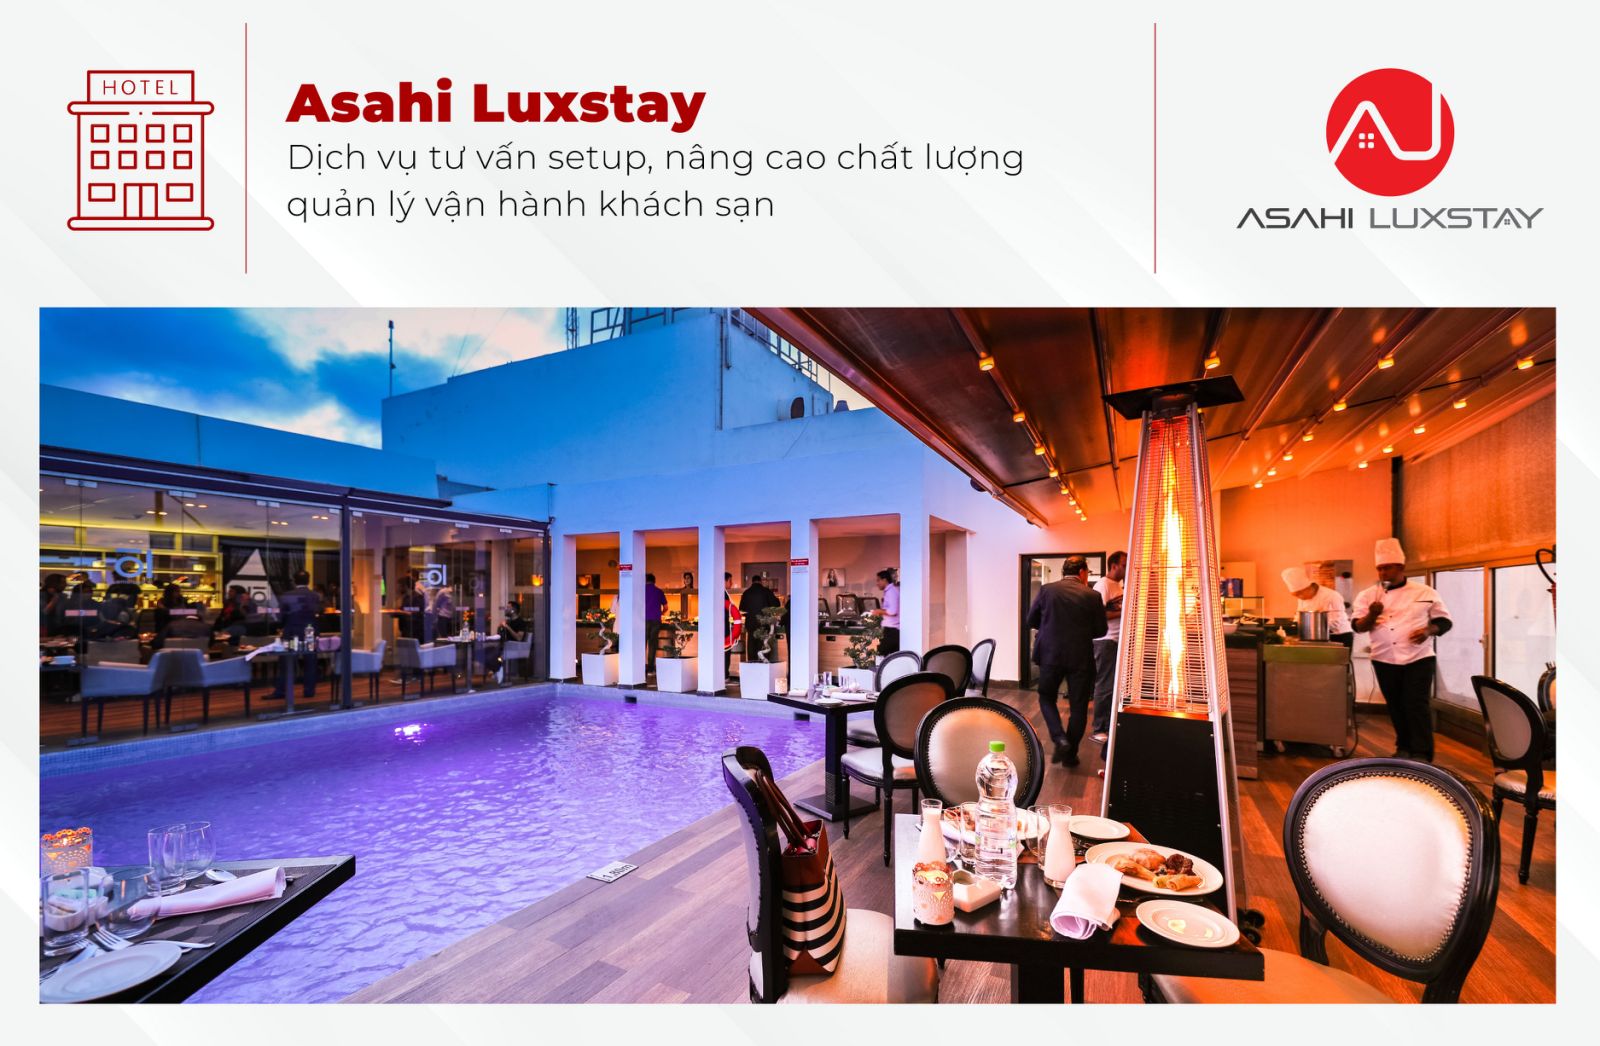 Asahi Luxstay - Cung cấp dịch vụ tư vấn quản lý vận hành khách sạn